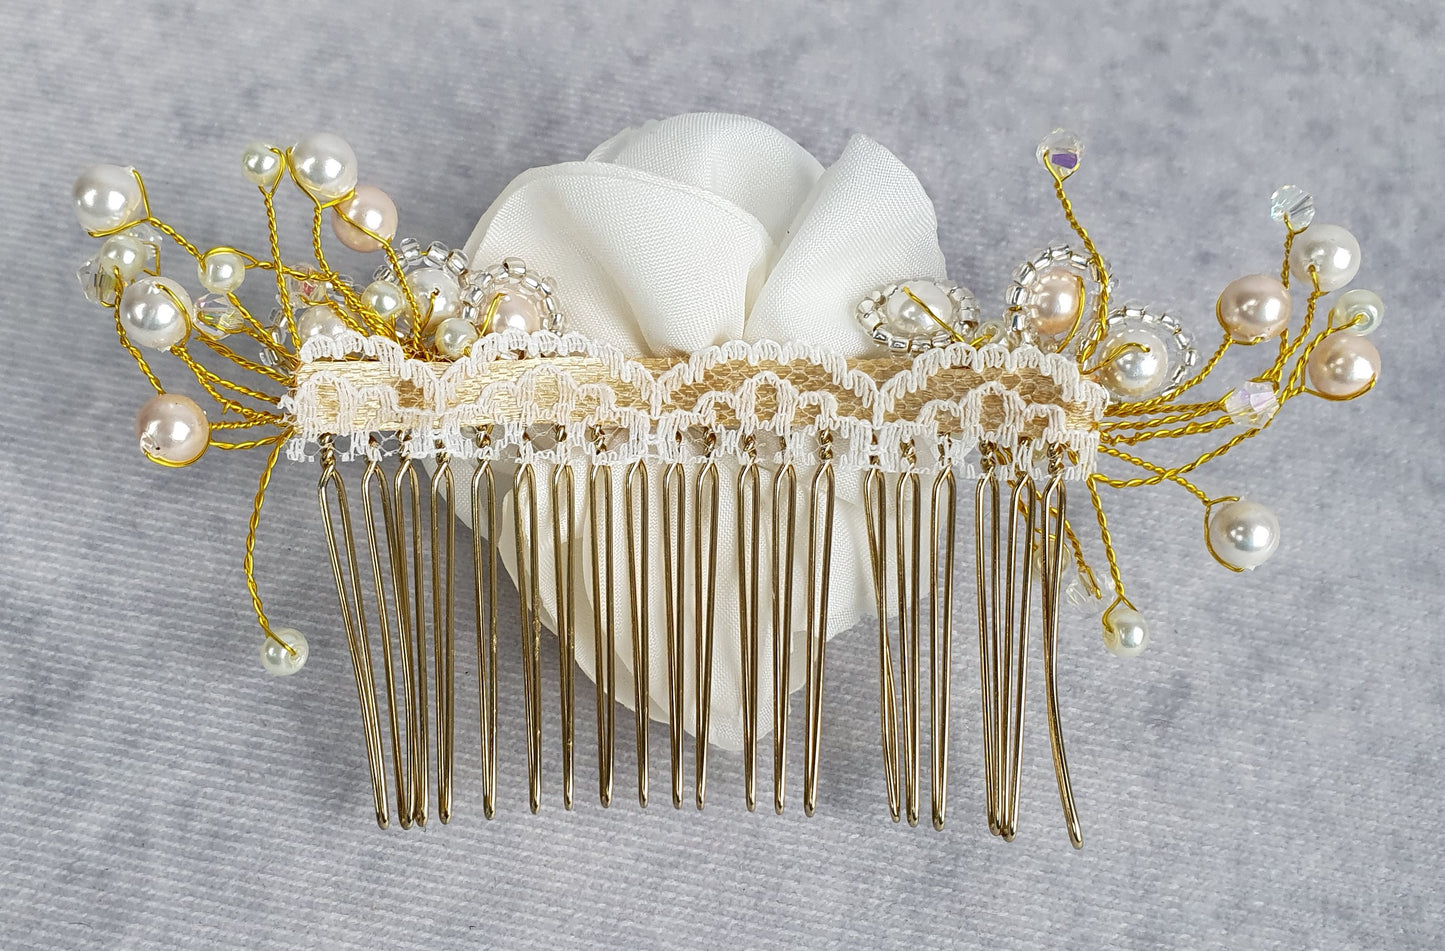 Peineta de novia con flor de seda y perlas - Hecho a mano con perlas, abalorios, accesorio para el cabello elegante, peineta para boda, eventos especiales